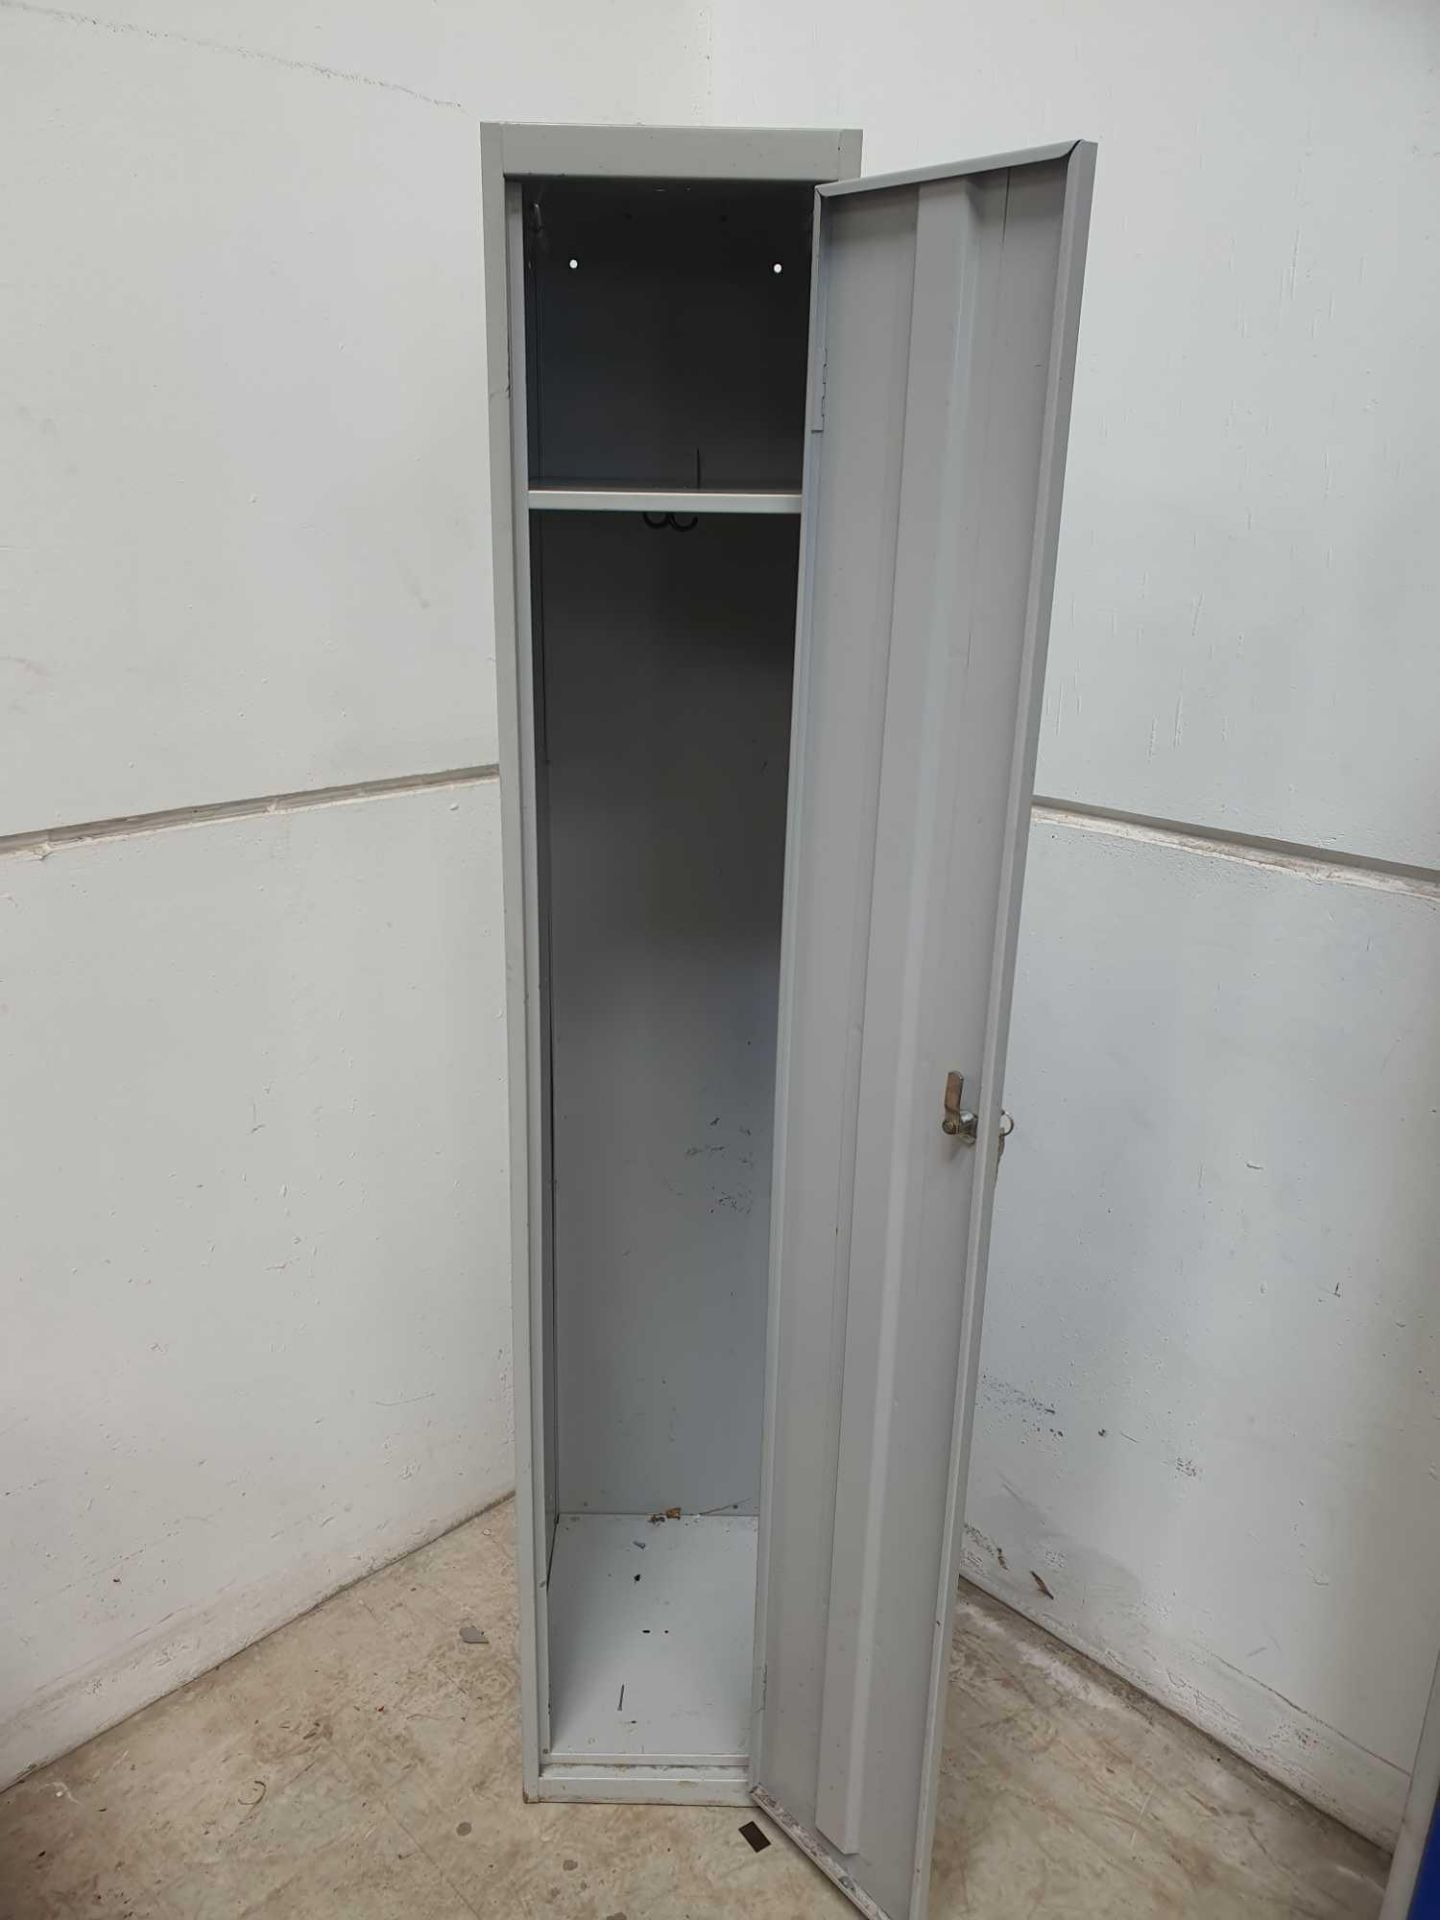 Locker. H,178cm x l,46cm x w,30cm - Image 2 of 2